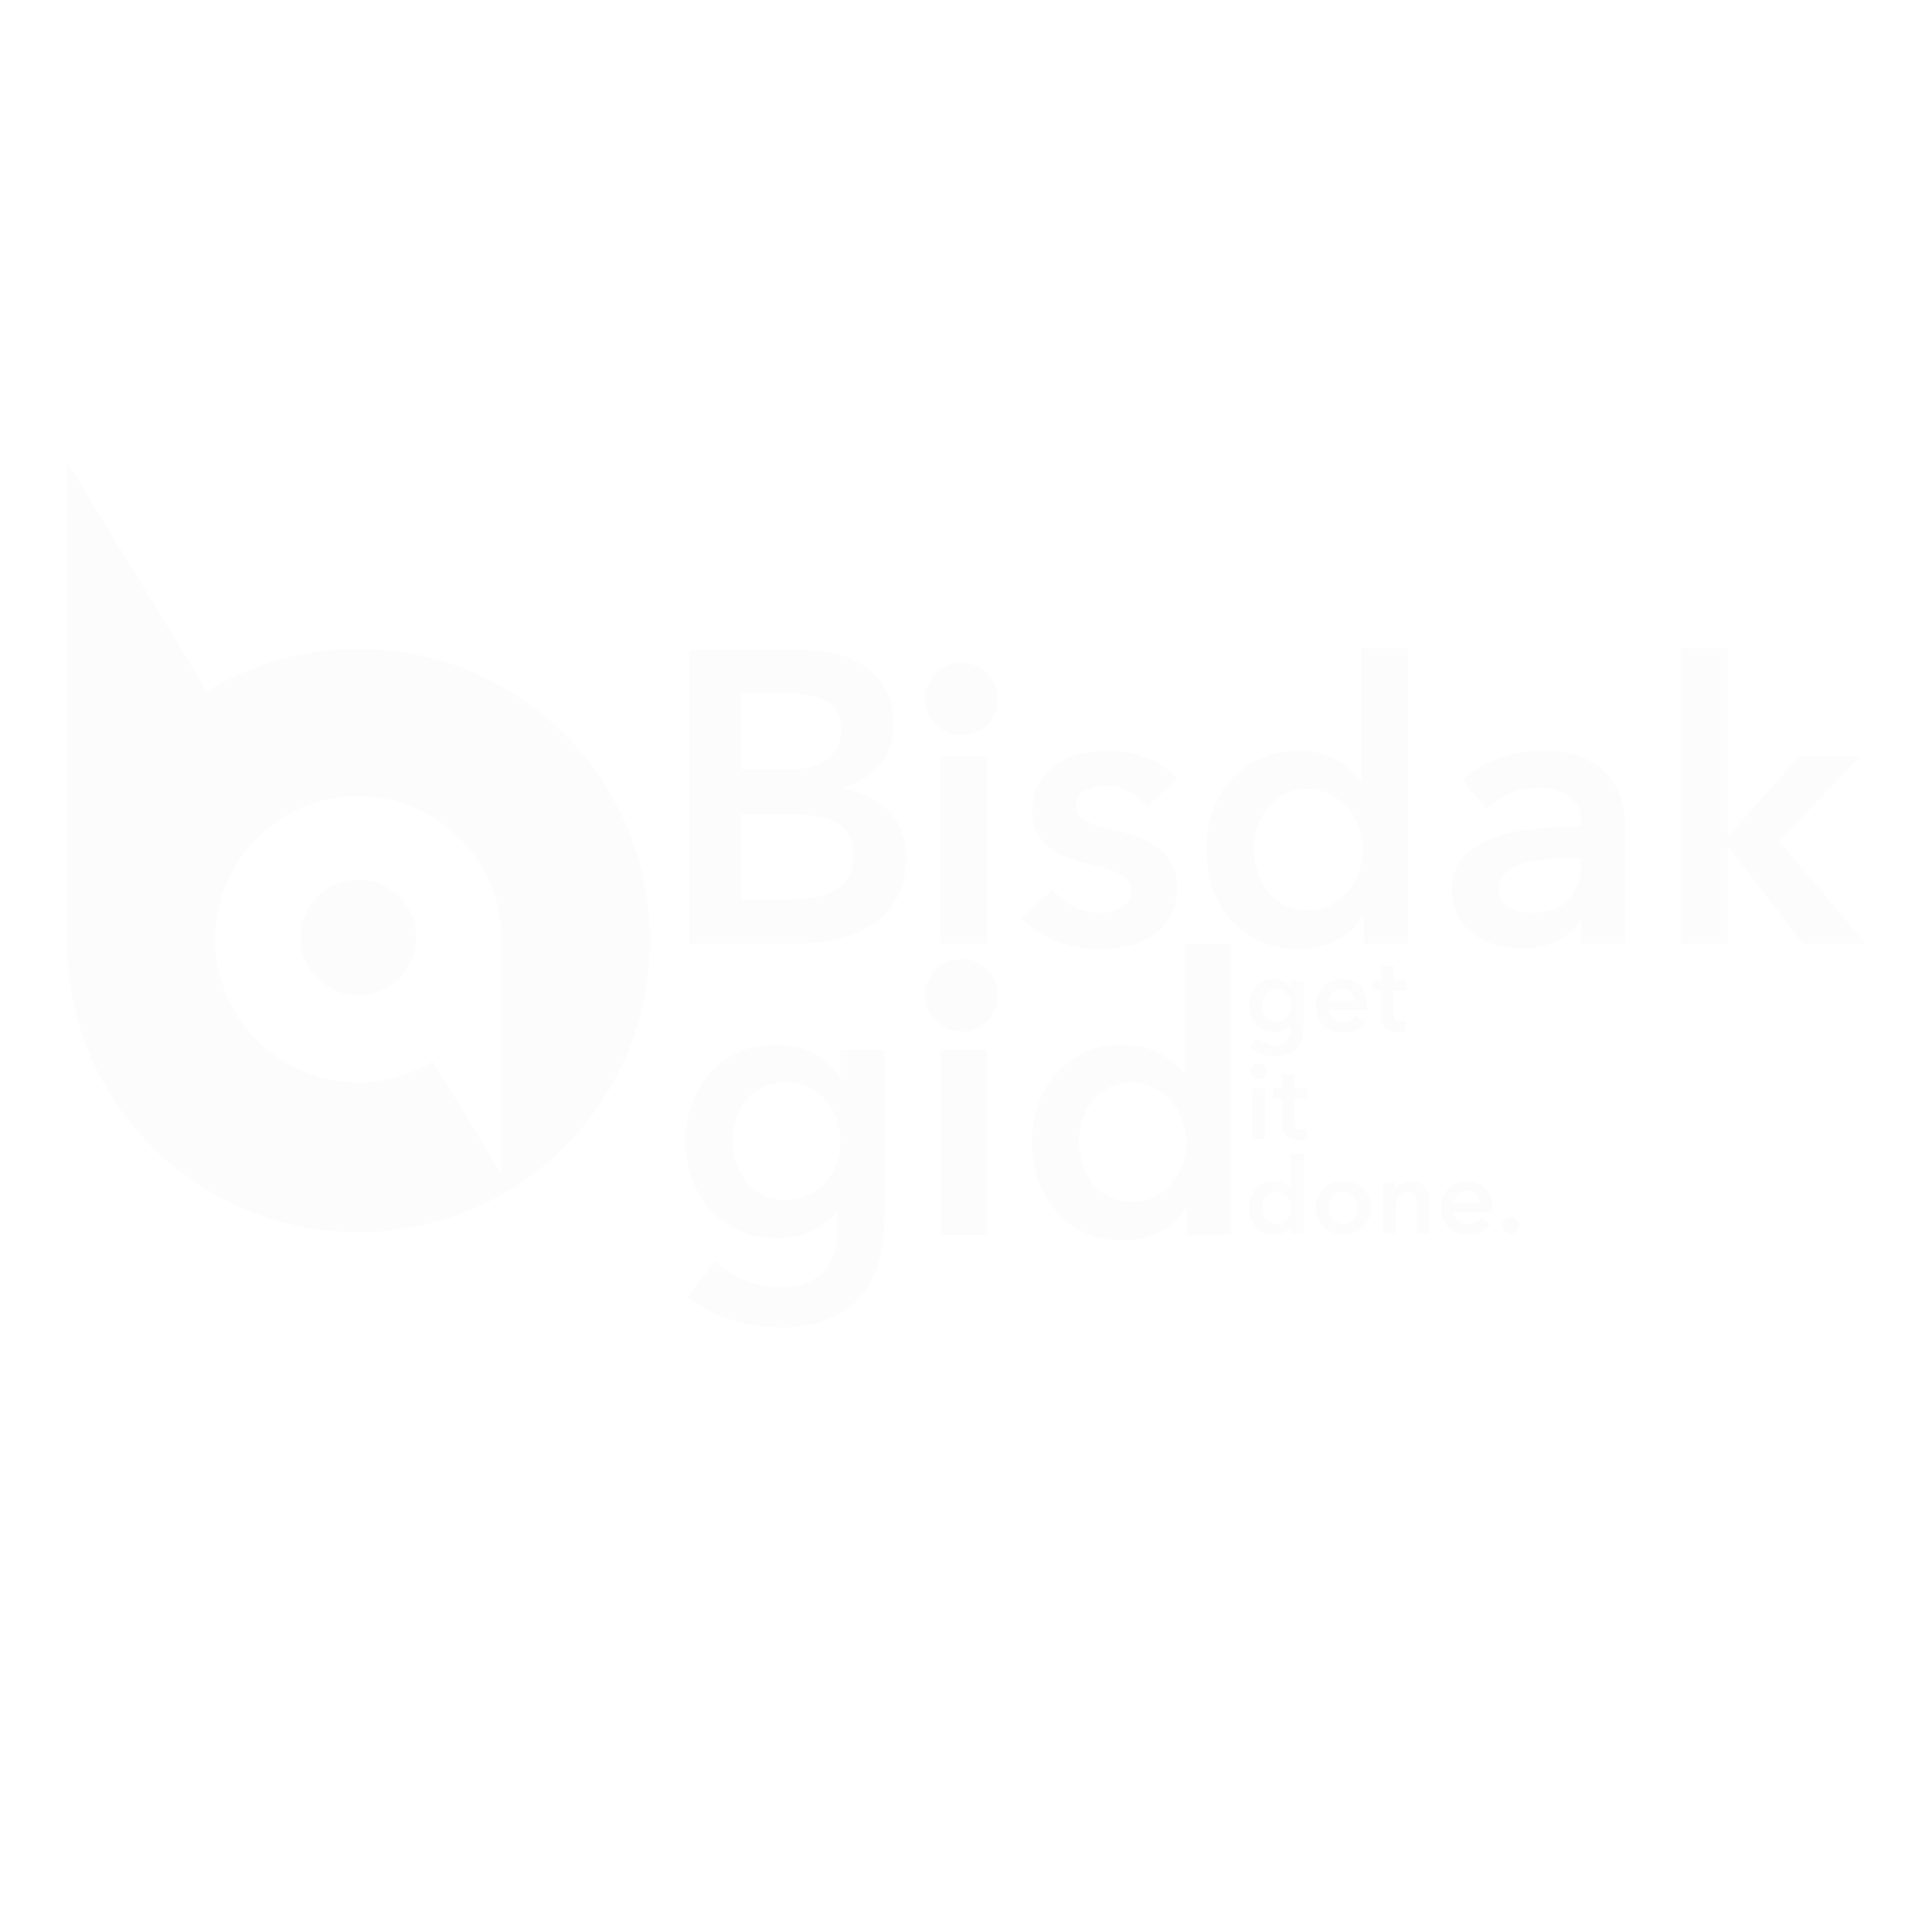 BisdakGid (Get It Done)